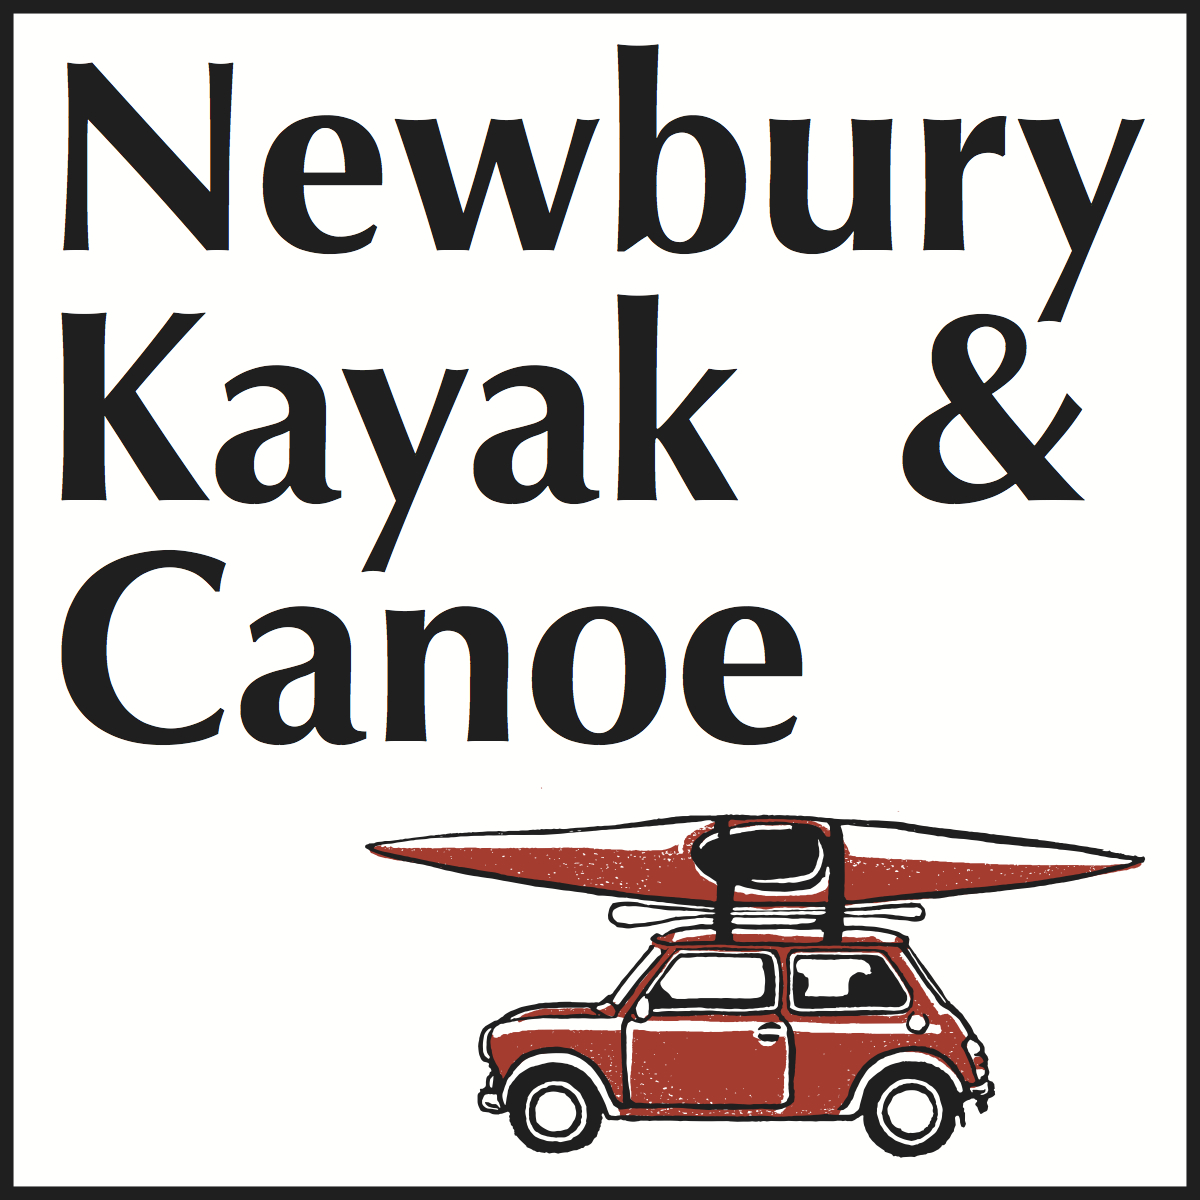 Newbury Kayak and Canoe